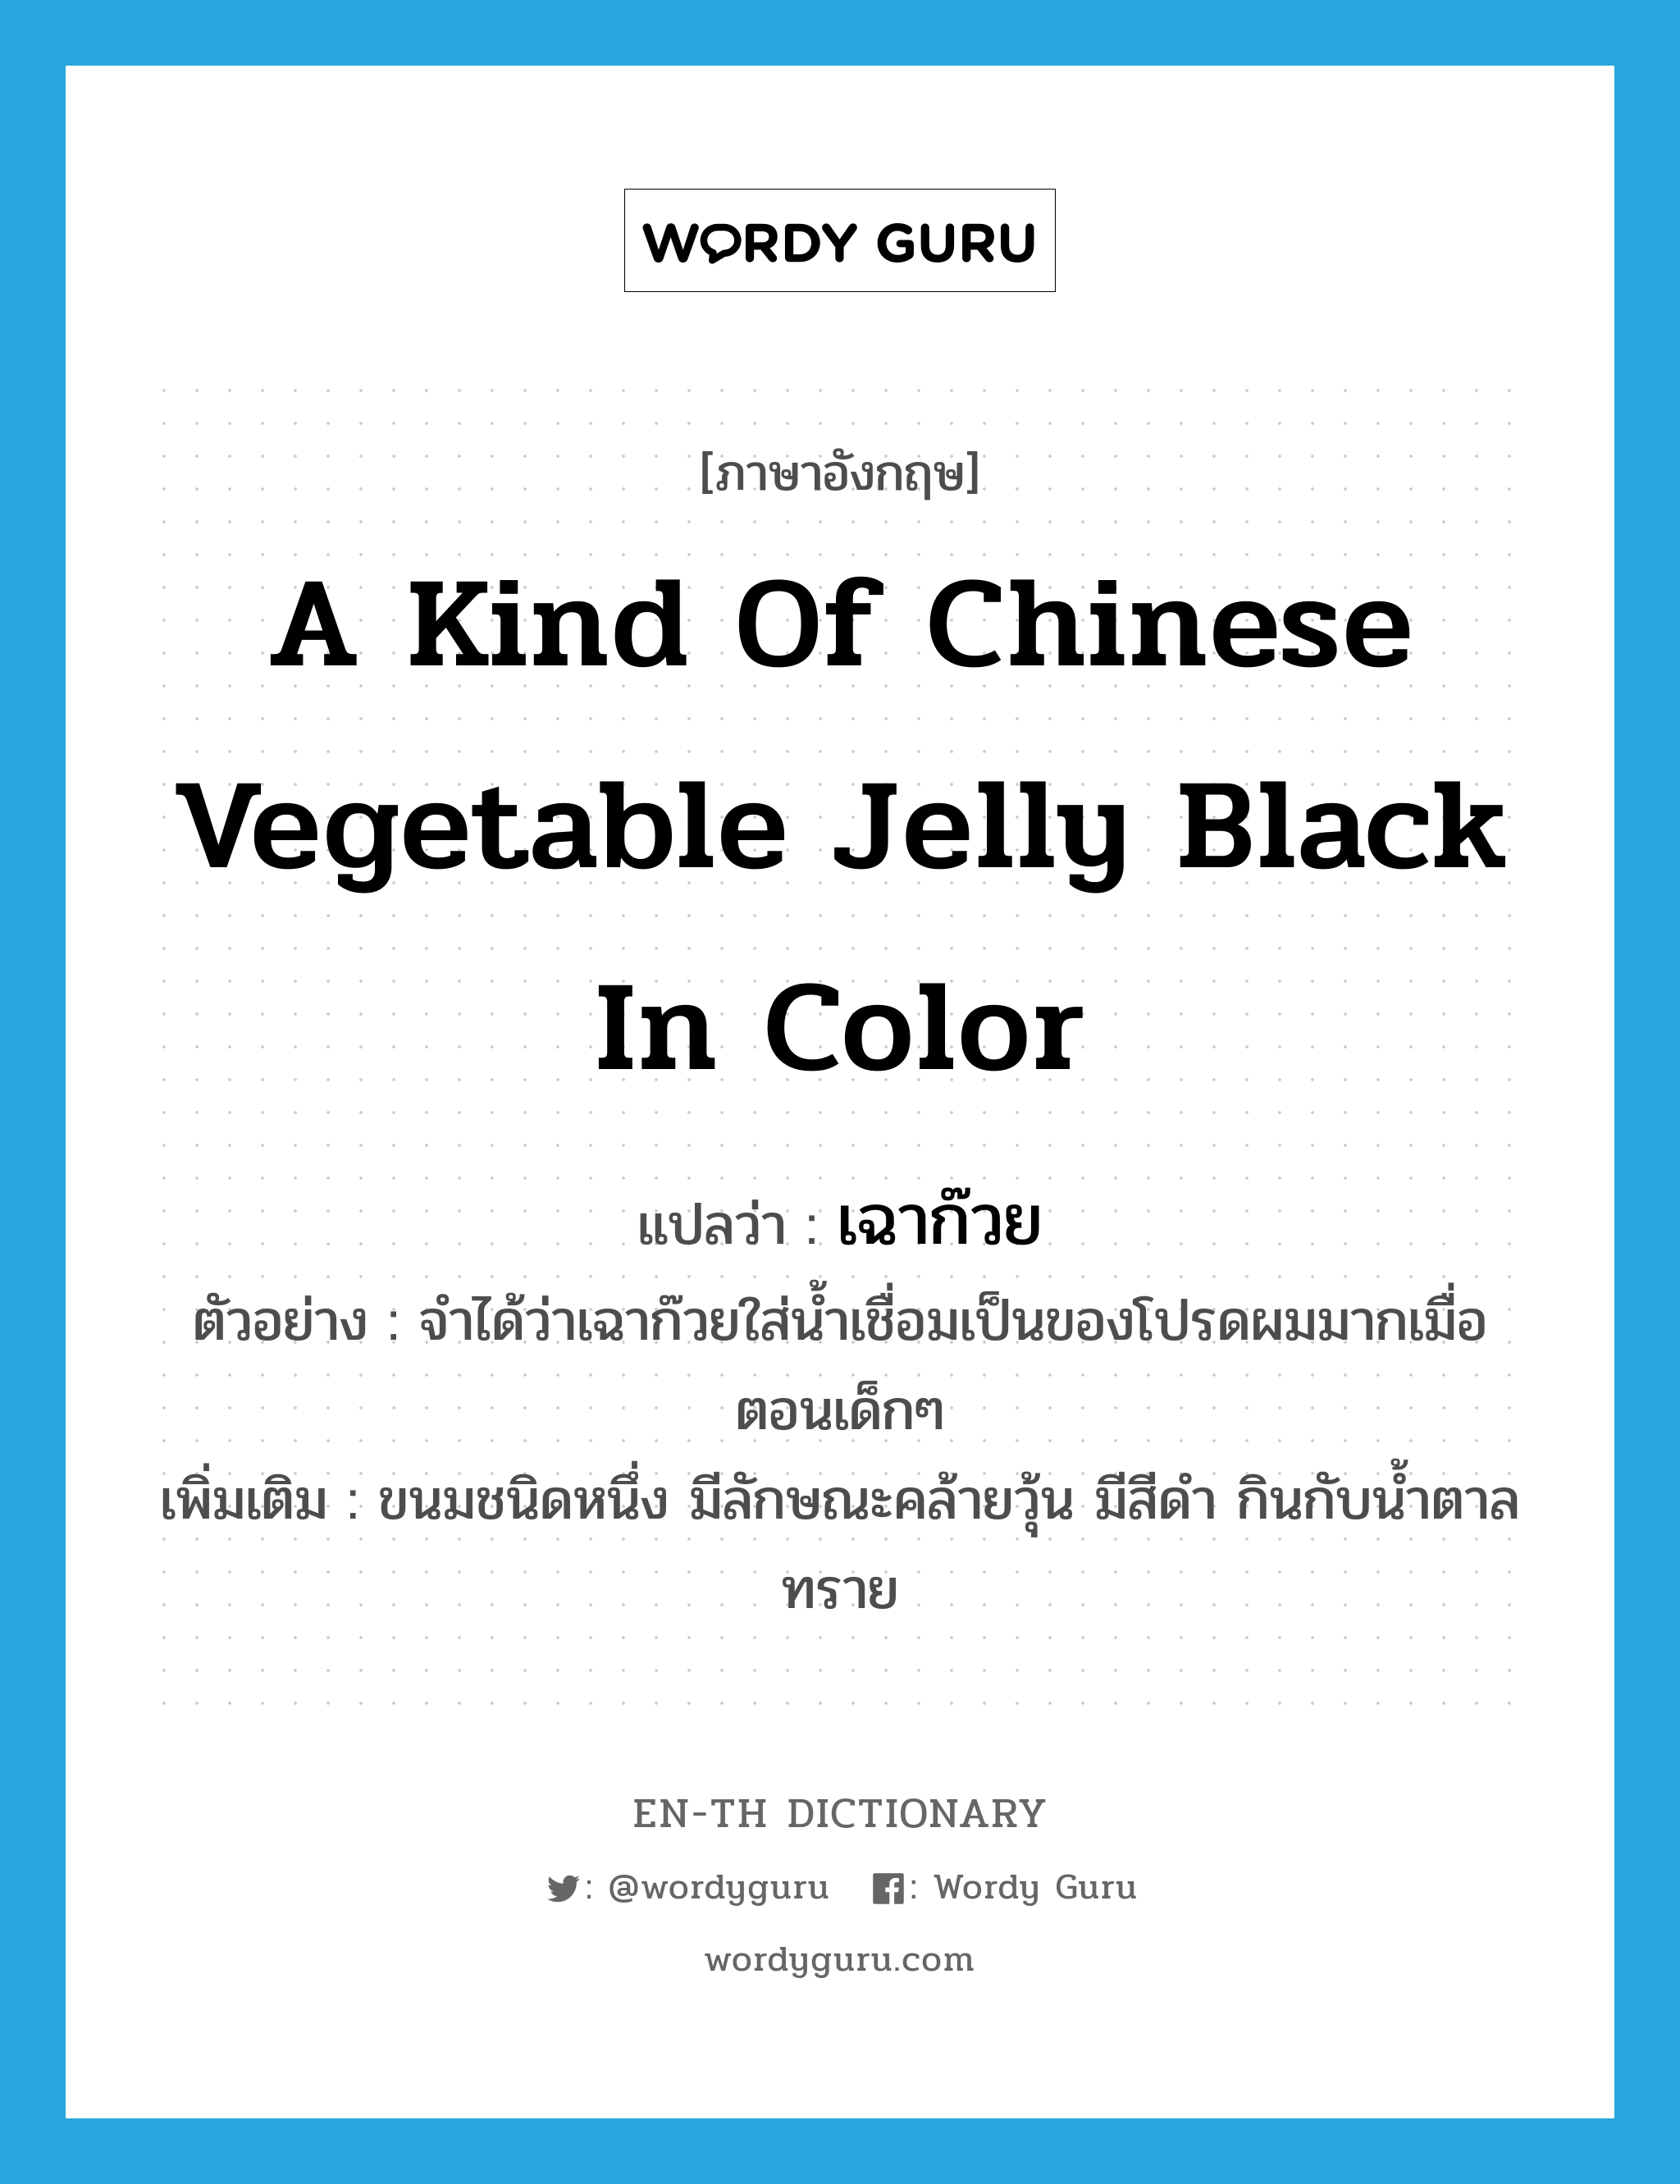 เฉาก๊วย ภาษาอังกฤษ?, คำศัพท์ภาษาอังกฤษ เฉาก๊วย แปลว่า a kind of Chinese vegetable jelly black in color ประเภท N ตัวอย่าง จำได้ว่าเฉาก๊วยใส่น้ำเชื่อมเป็นของโปรดผมมากเมื่อตอนเด็กๆ เพิ่มเติม ขนมชนิดหนึ่ง มีลักษณะคล้ายวุ้น มีสีดำ กินกับน้ำตาลทราย หมวด N